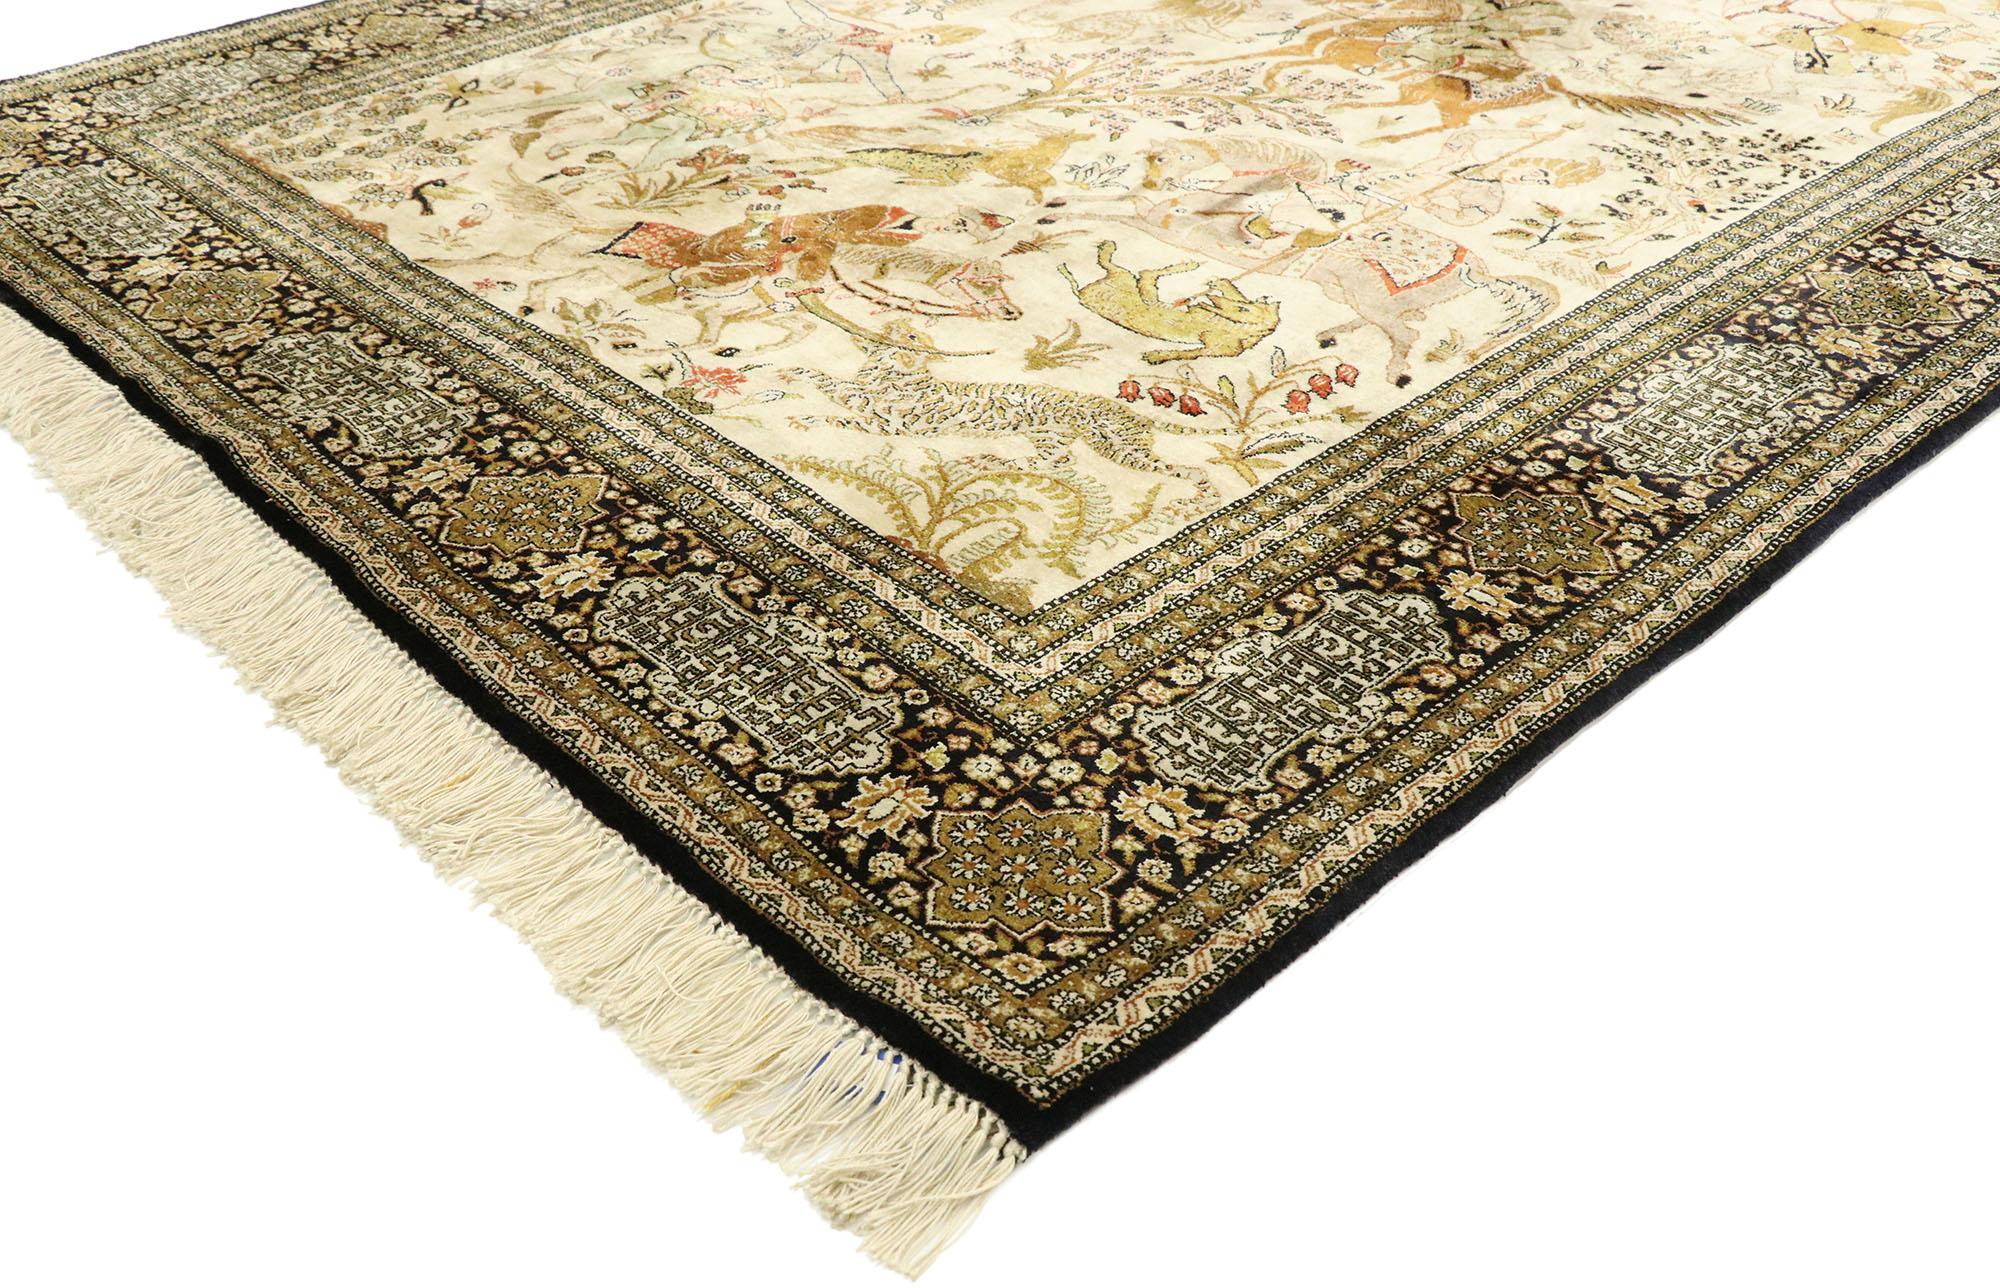 77512, tapis persan Qum vintage avec scène de chasse. Ce tapis persan Qum vintage en laine nouée à la main présente une scène de chasse animée sur un fond beige. Le sens du vol est évident lorsque des chasseurs persans à cheval luttent avec des